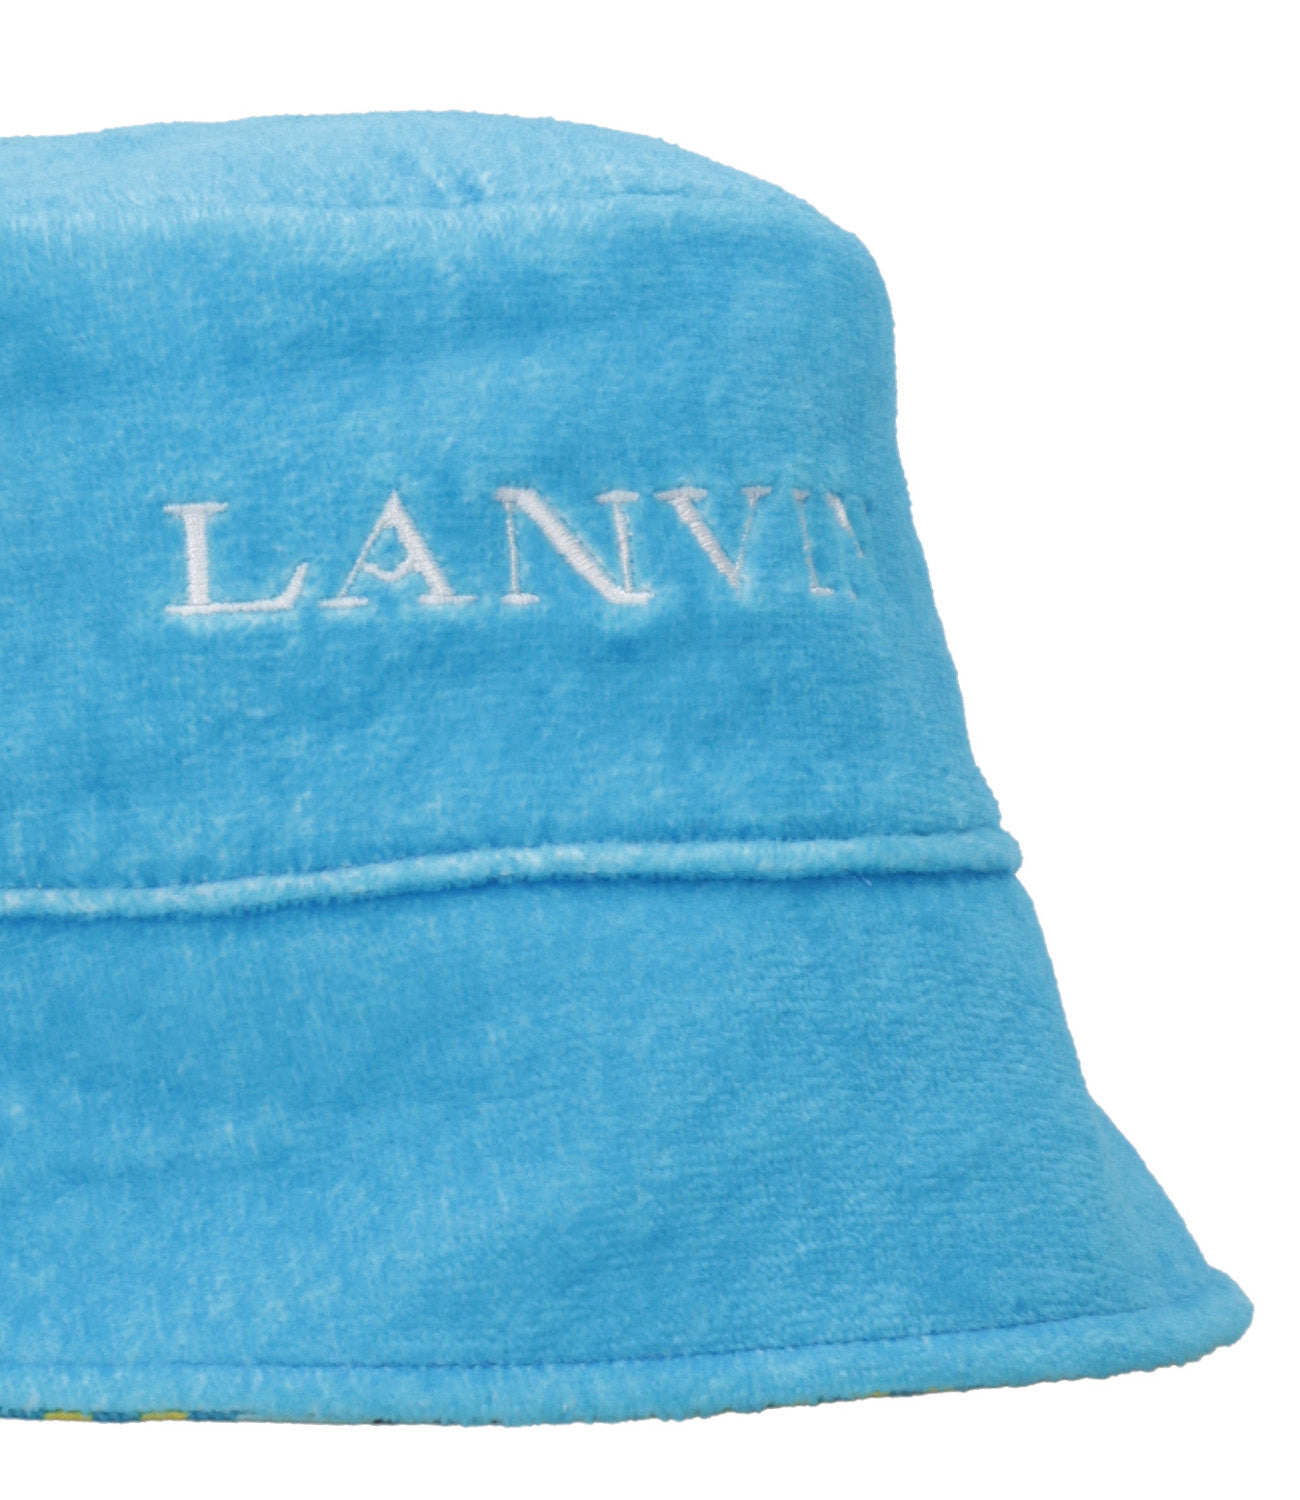 Lanvin | Cappello Celeste